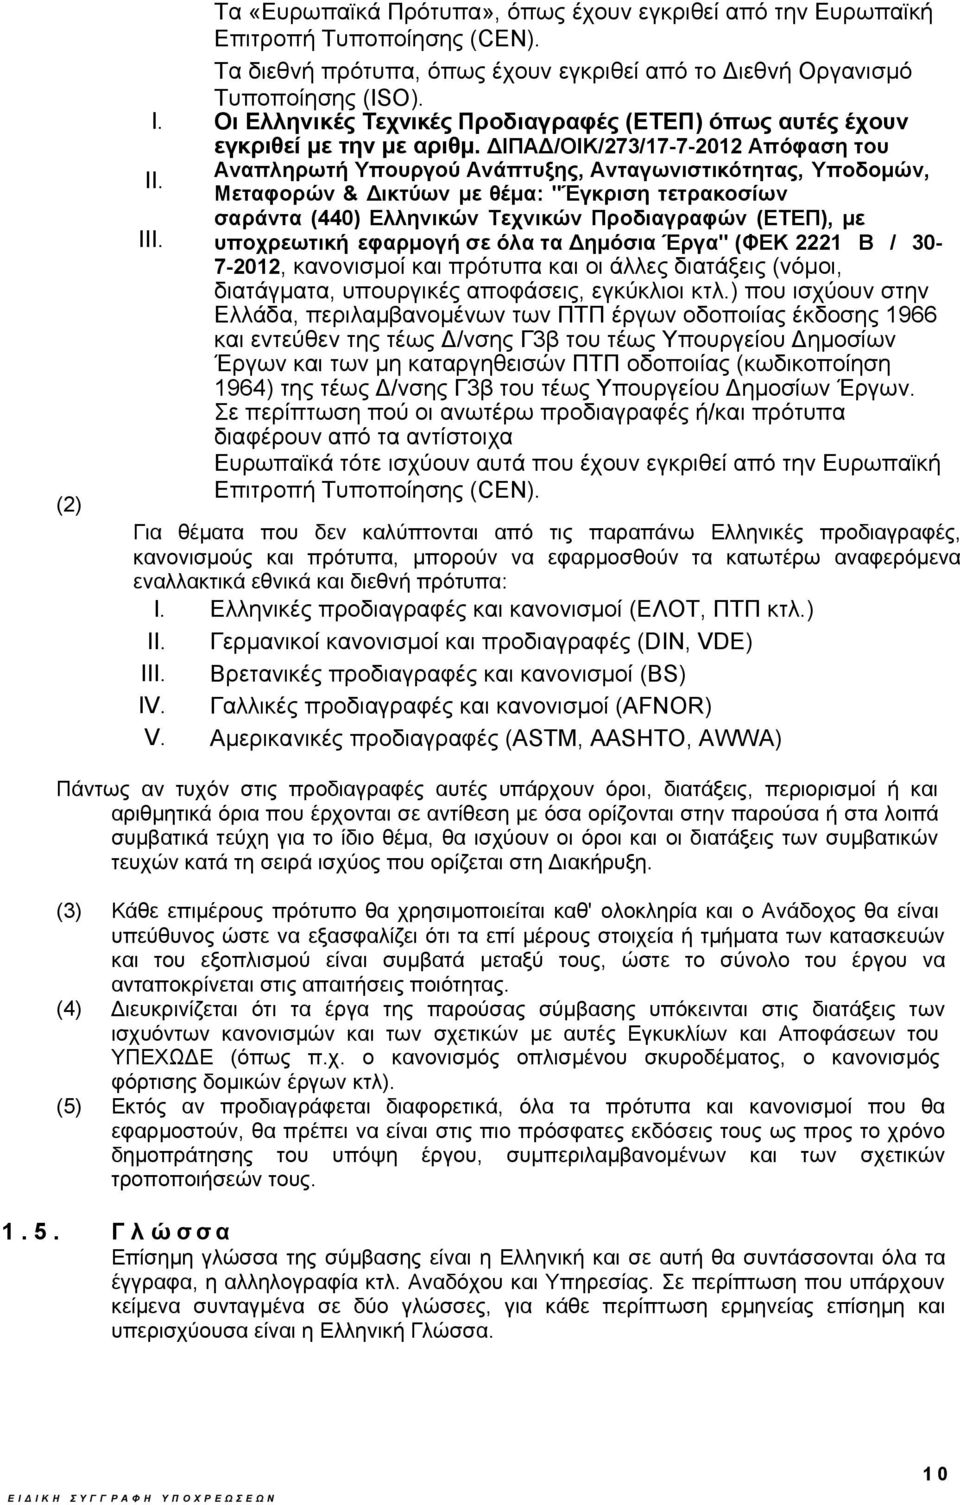 ΔΙΠΑΔ/ΟΙΚ/273/17-7-2012 Απόφαση του Αναπληρωτή Υπουργού Ανάπτυξης, Ανταγωνιστικότητας, Υποδομών, Μεταφορών & Δικτύων με θέμα: "Έγκριση τετρακοσίων σαράντα (440) Ελληνικών Τεχνικών Προδιαγραφών